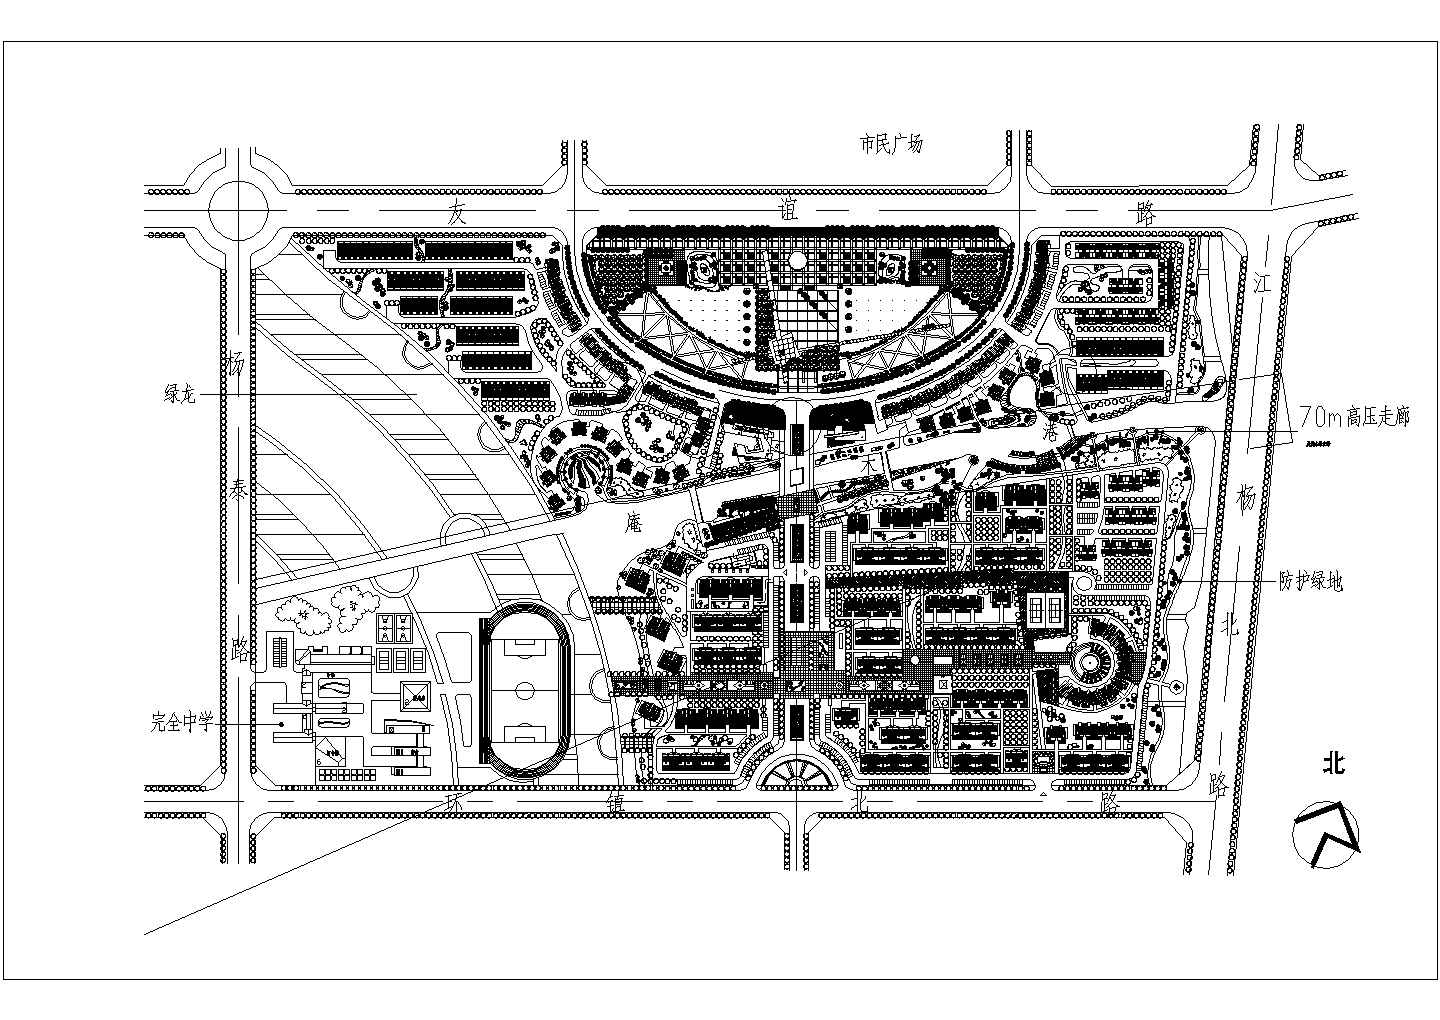 上海市郊区某地万科CAD设计规划图